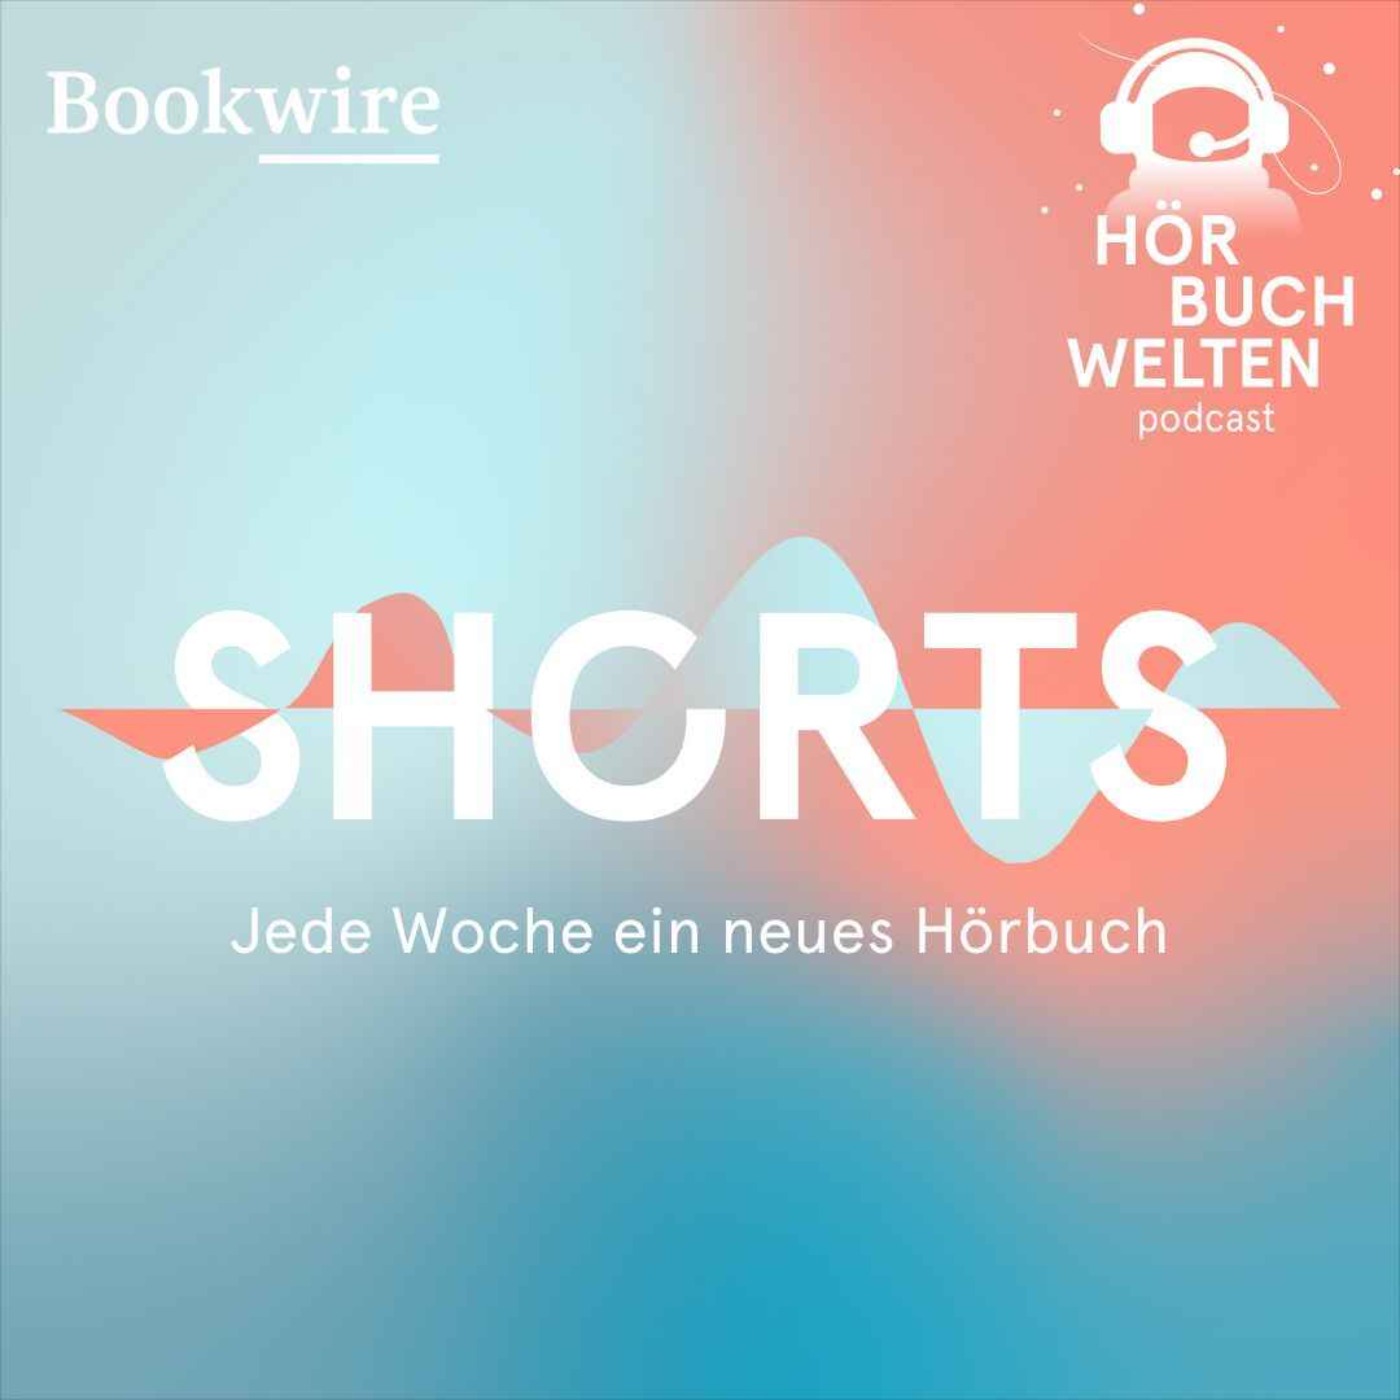 Vernichten von Michel Houellebecq – Hörbuchwelten Shorts